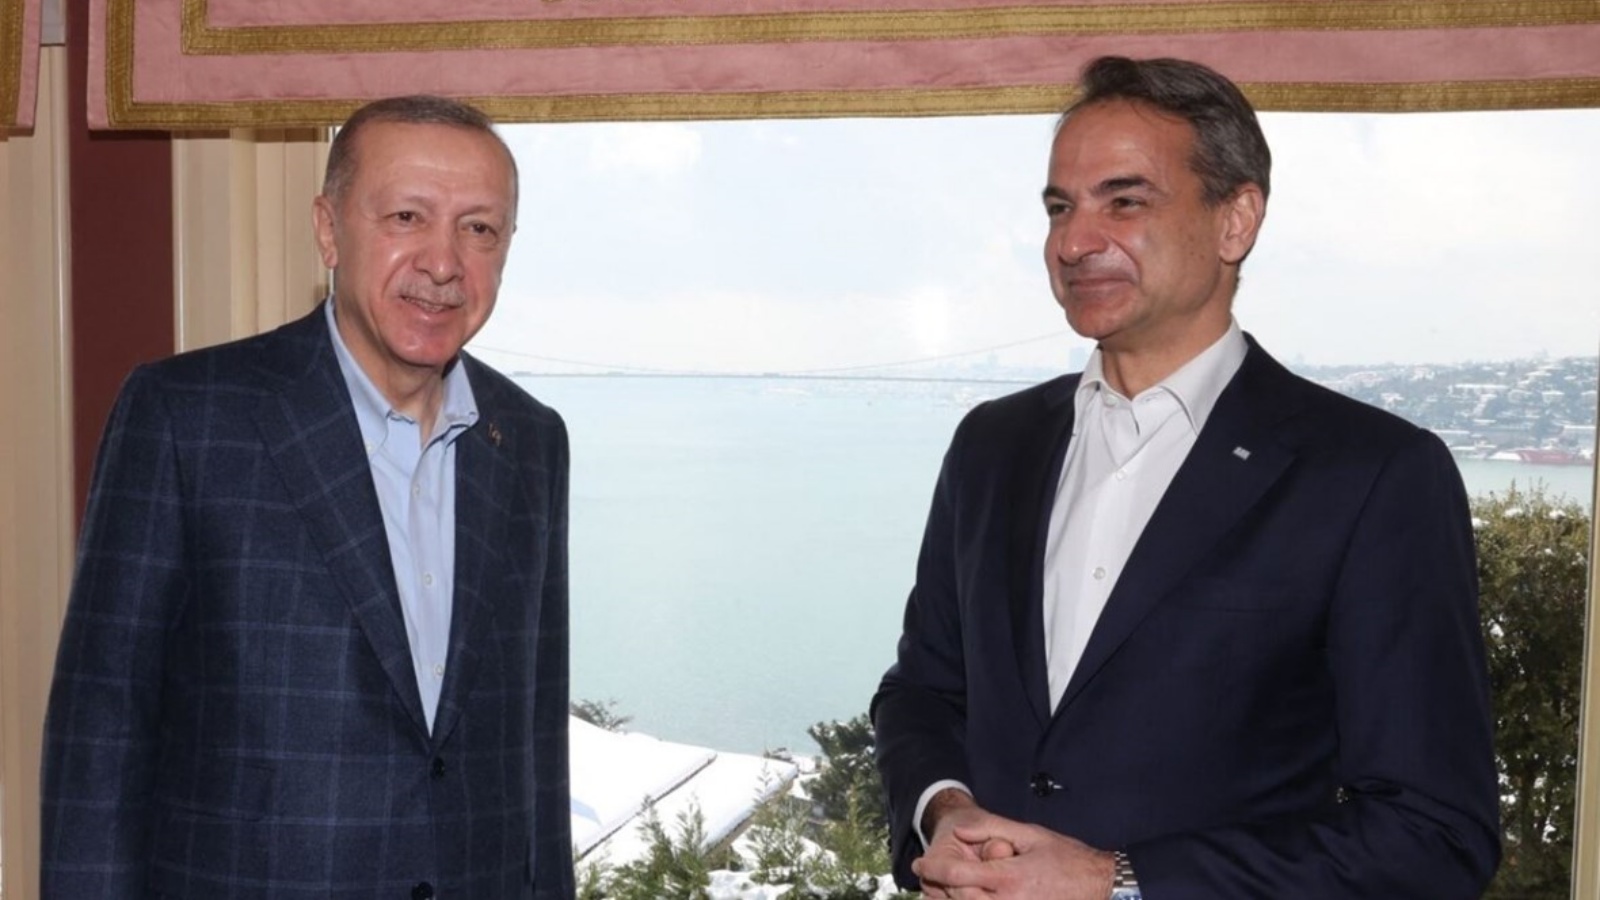 رئيس الوزراء اليوناني كيرياكوس ميتسوتاكيس والرئيس التركي رجب طيب إردوغان